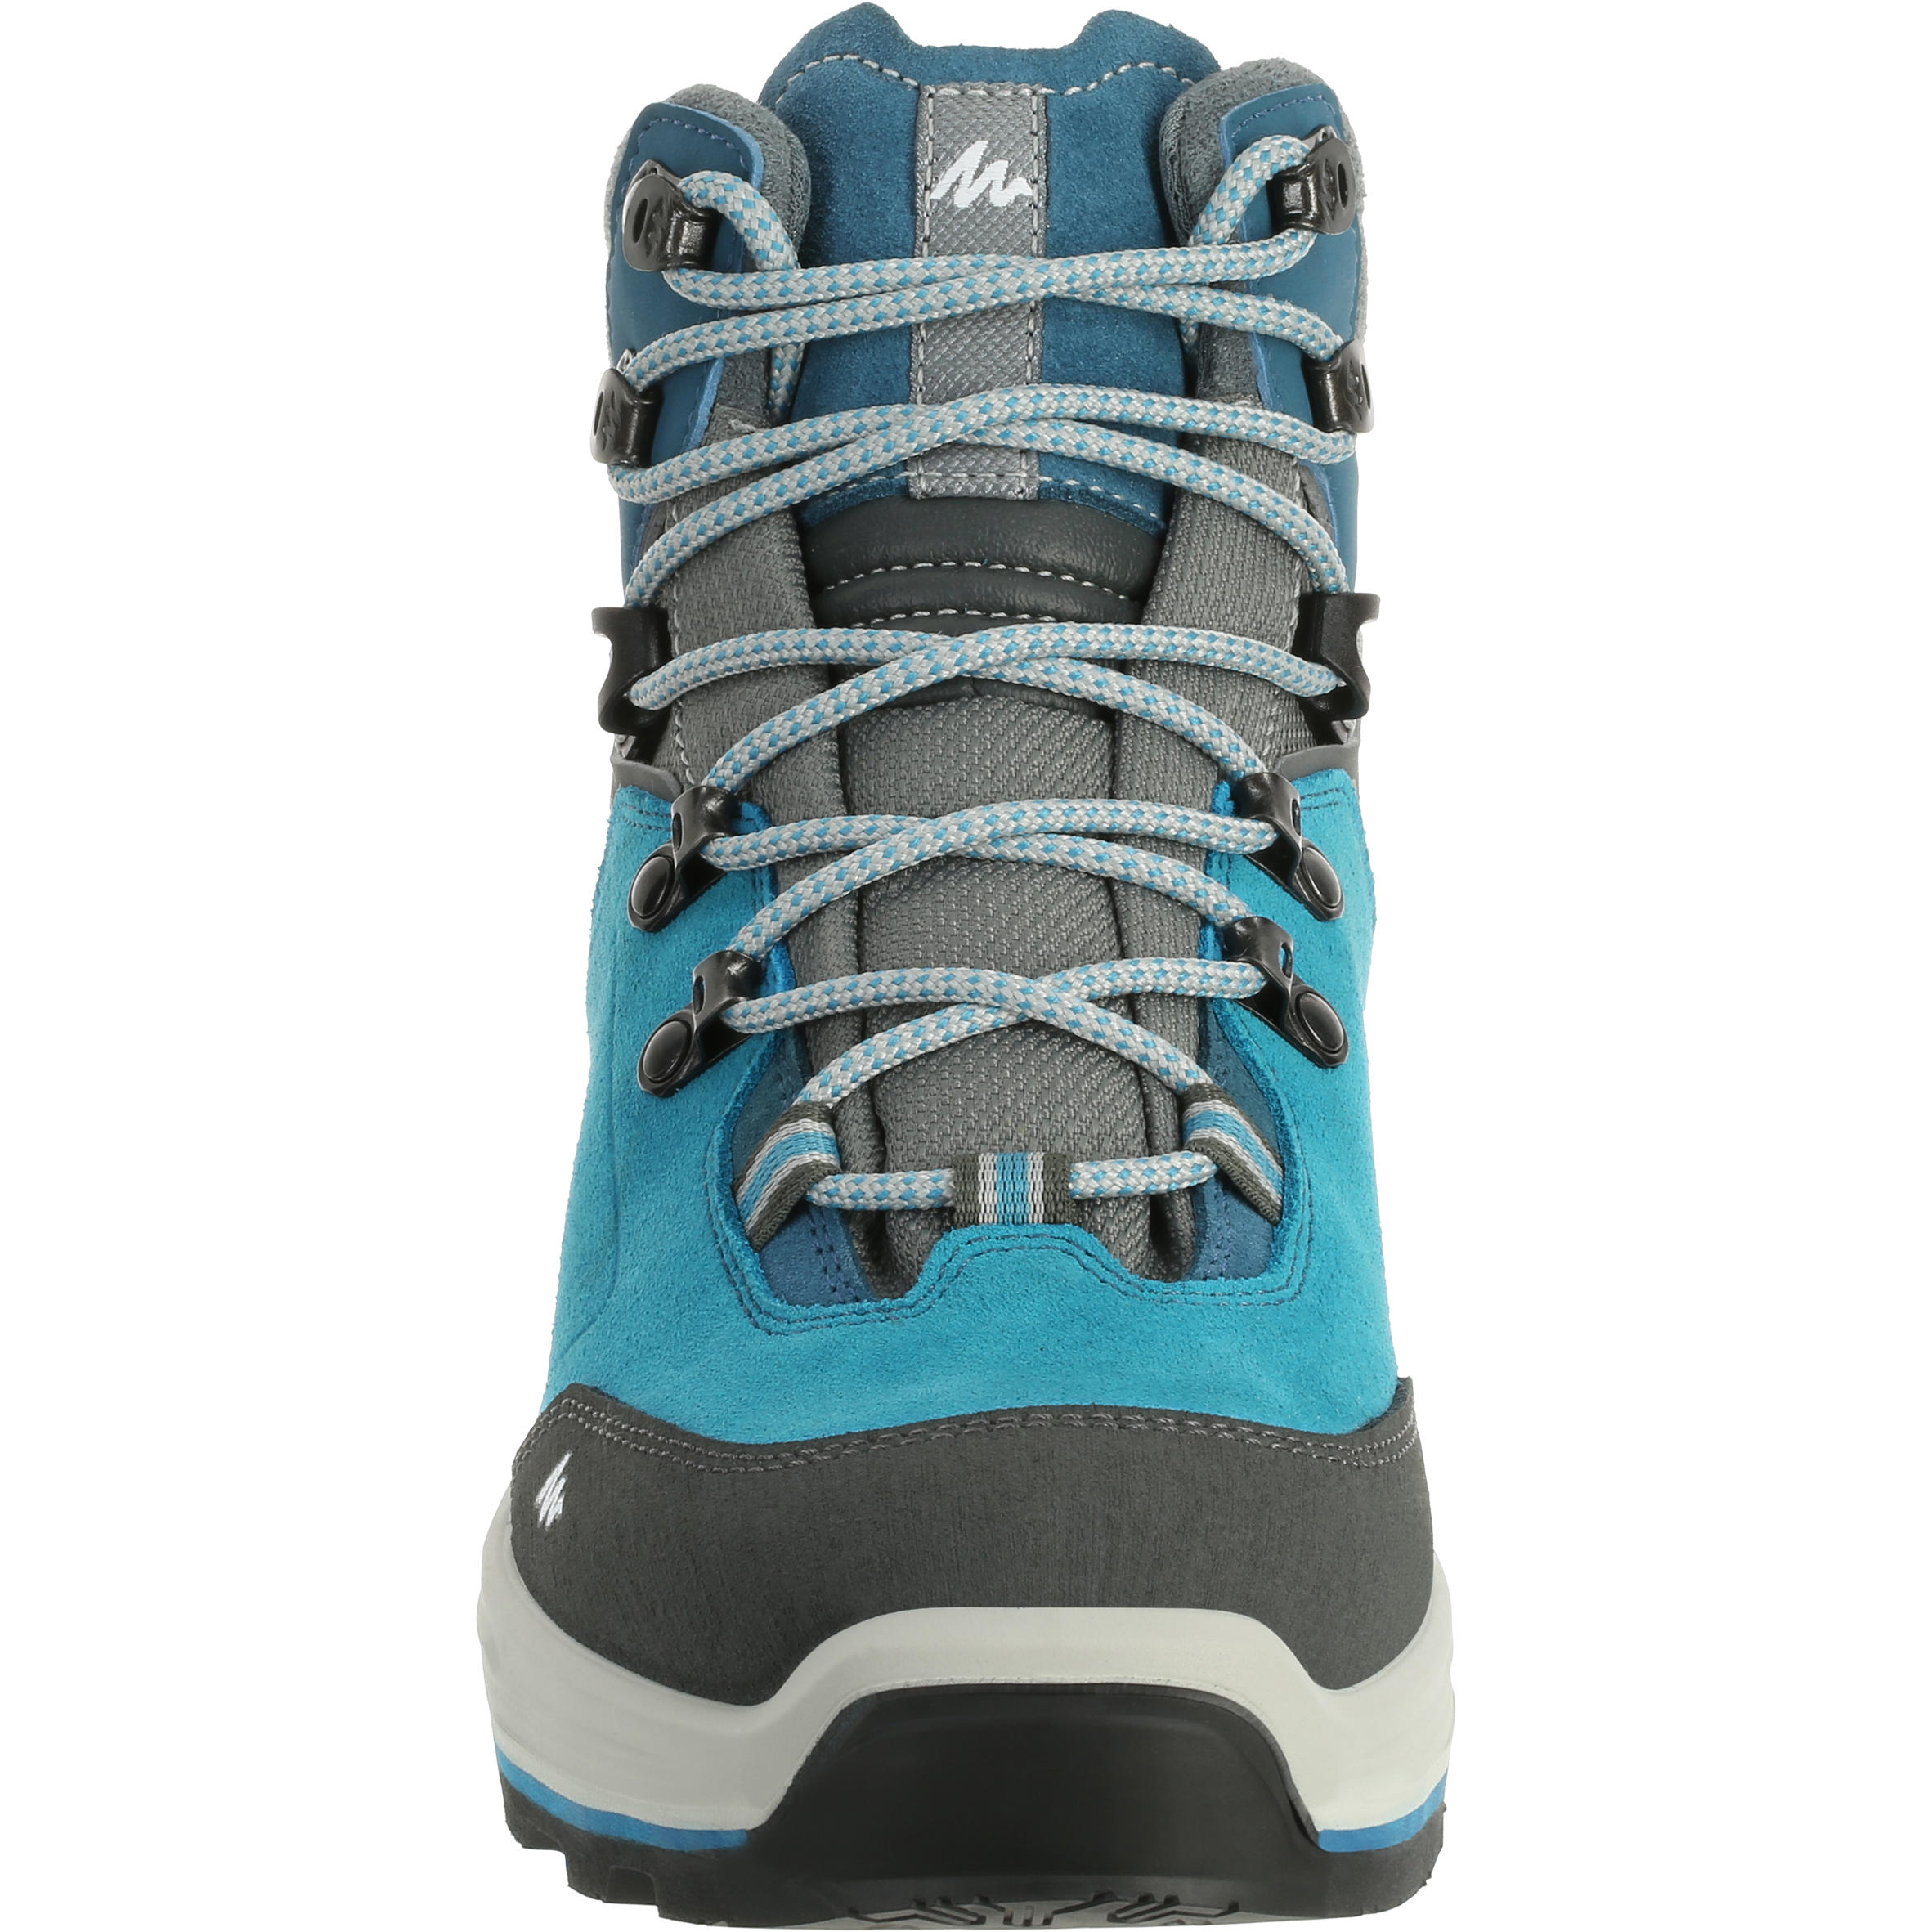 Trekking 100 Waterproof Woman’s Shoe - Blue 4/11